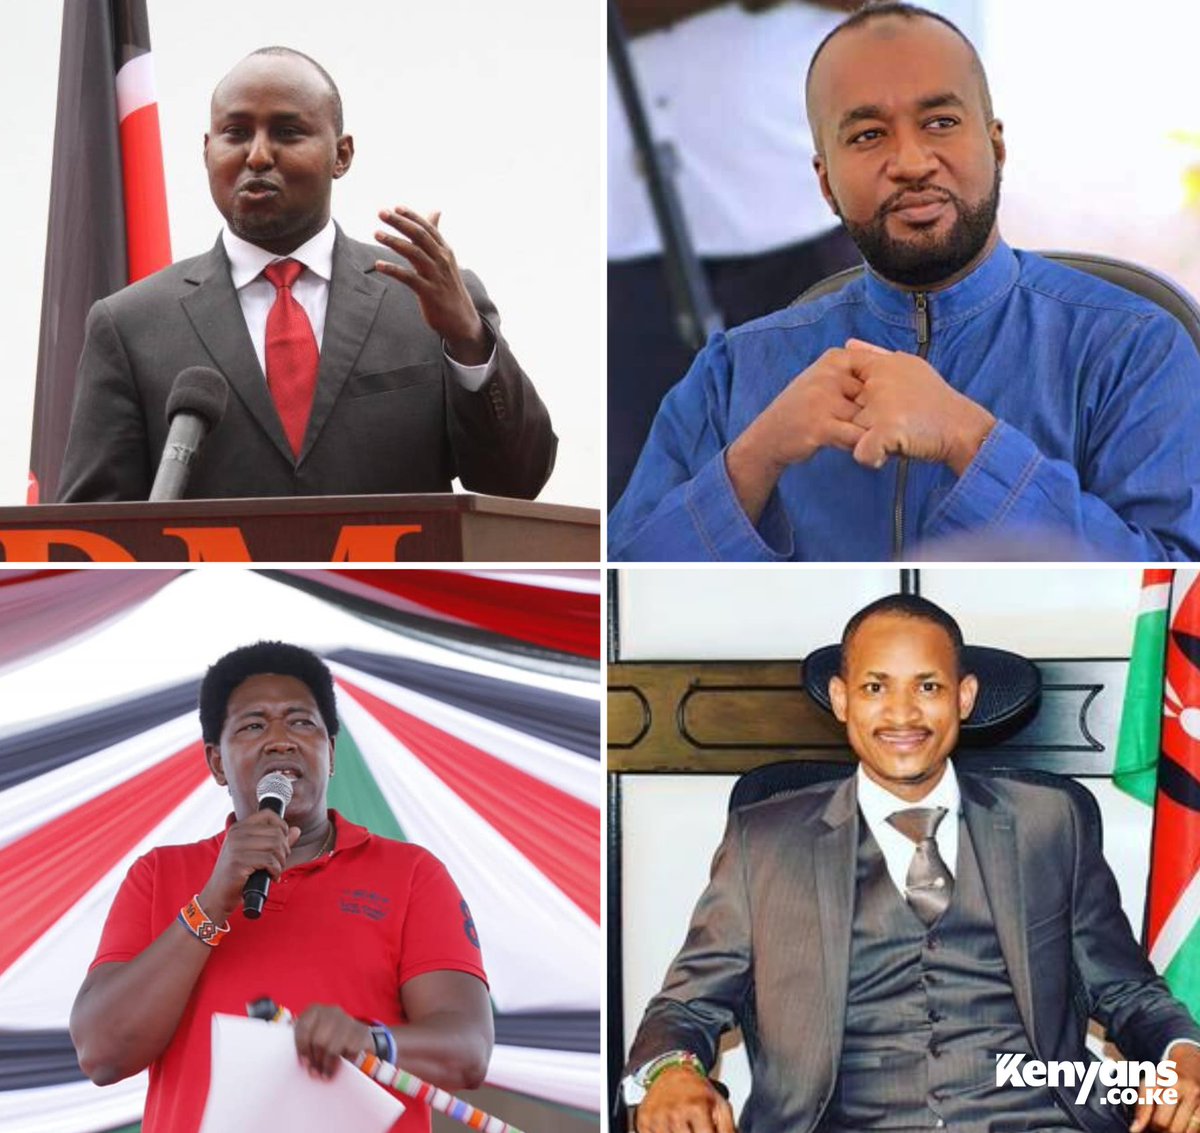 Who do you think will be Raila Odinga's successor? 1. Junet Mohamed 2. Hassan Joho 3. Ledama Ole Kina 4. Babu Owino